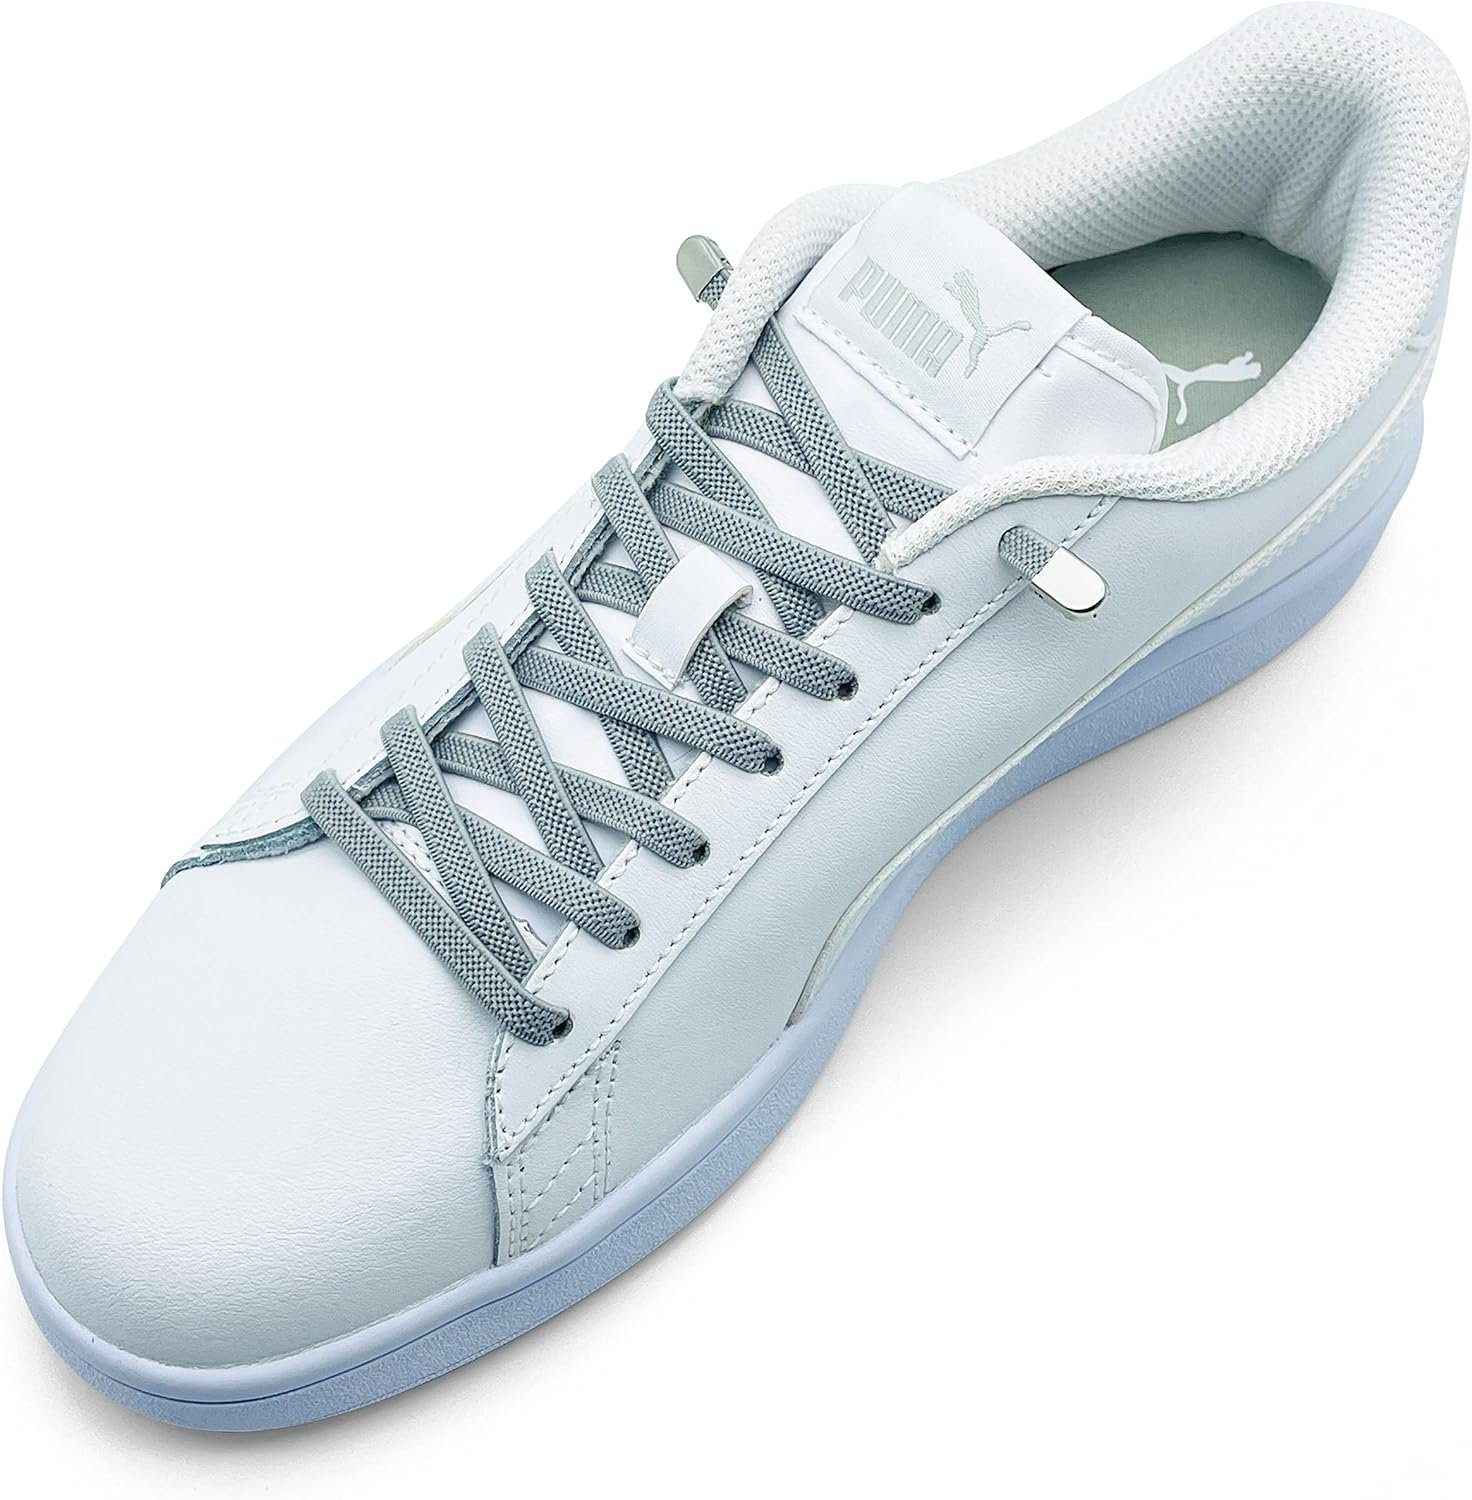 ELANOX Schnürsenkel 4 Stück für 2 Paar Schuhe elastische Schnürsenkel mit Clips, inkl. Enden (Clips) - 8 St. in silber grau